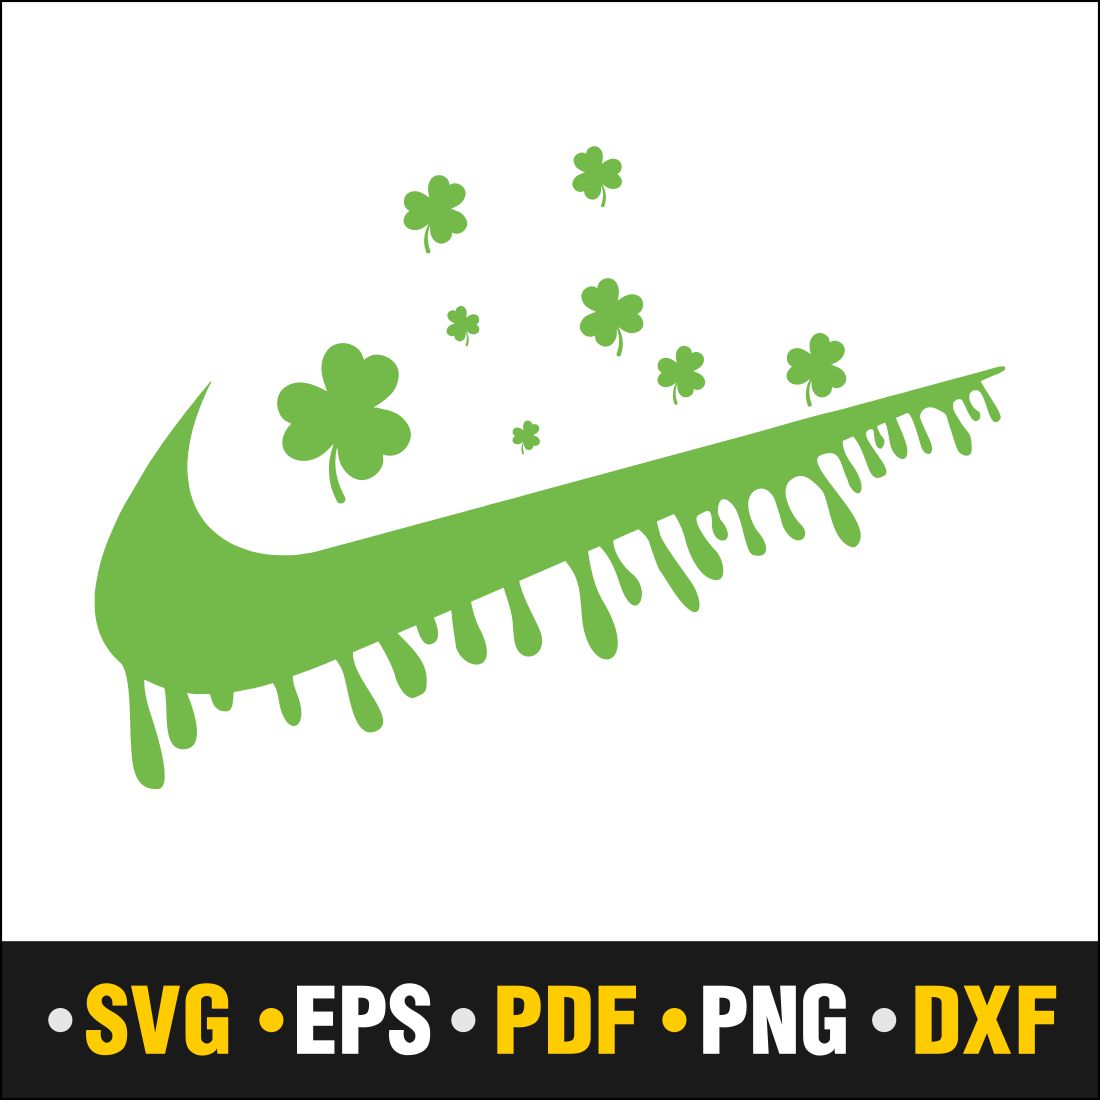 St Patrick\\\'s Day SVG Bundle, St Patrick\\\'s Dribble Nike, Lucky SVG, St Patricks Day Rainbow, Shamrock, Cut File Cricut cover image.